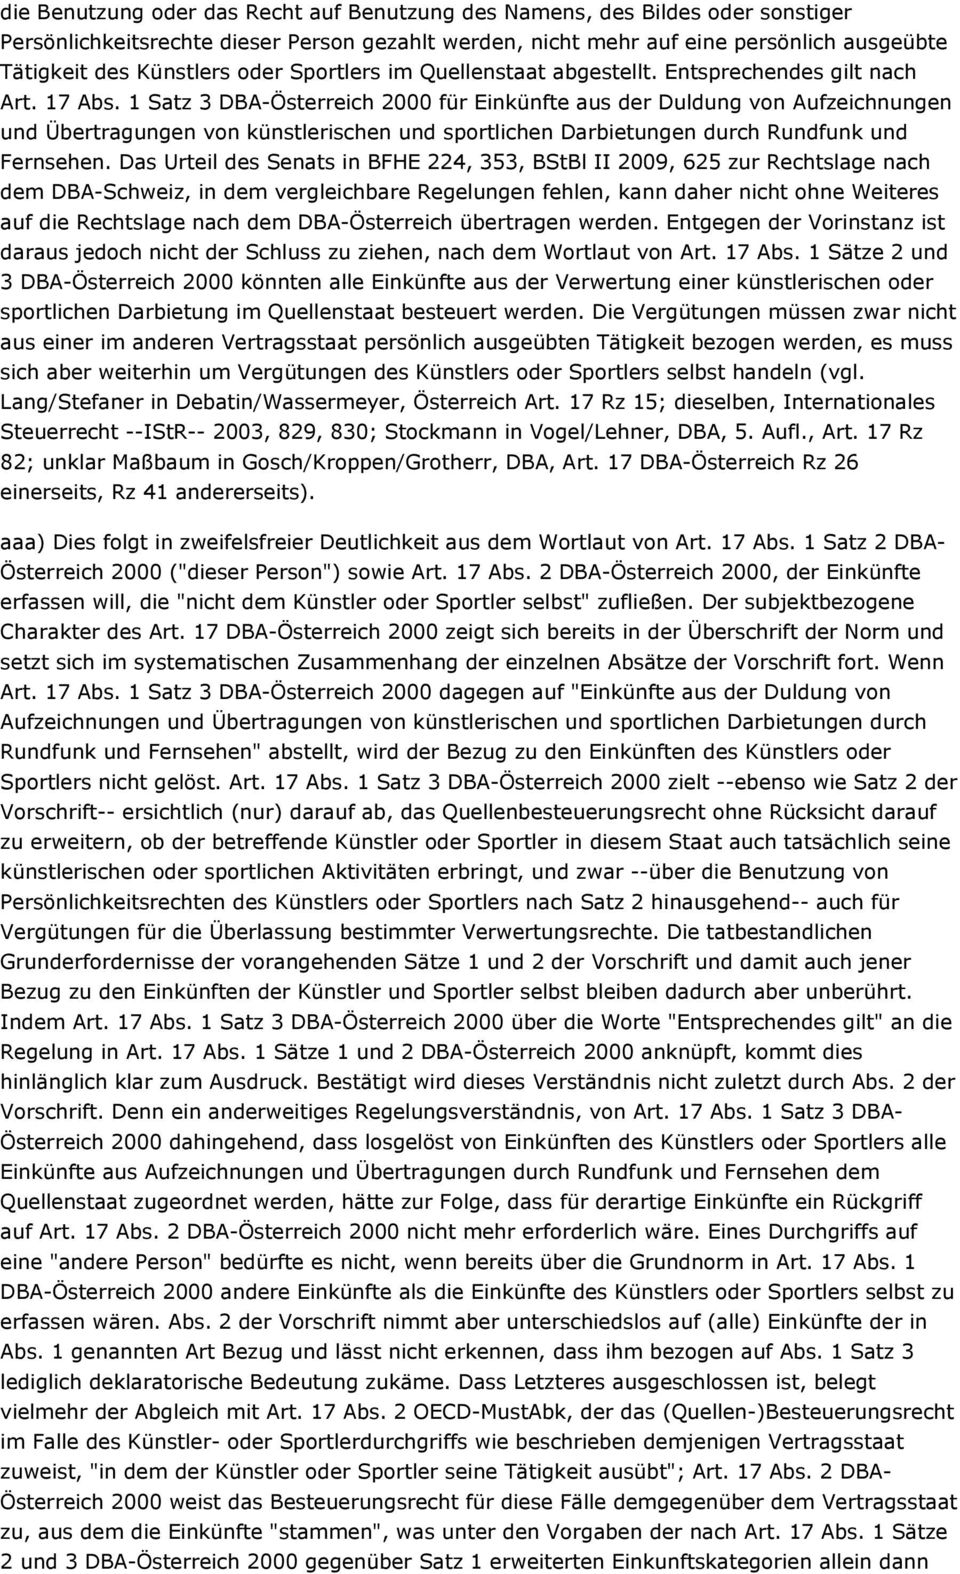 1 Satz 3 DBA-Österreich 2000 für Einkünfte aus der Duldung von Aufzeichnungen und Übertragungen von künstlerischen und sportlichen Darbietungen durch Rundfunk und Fernsehen.